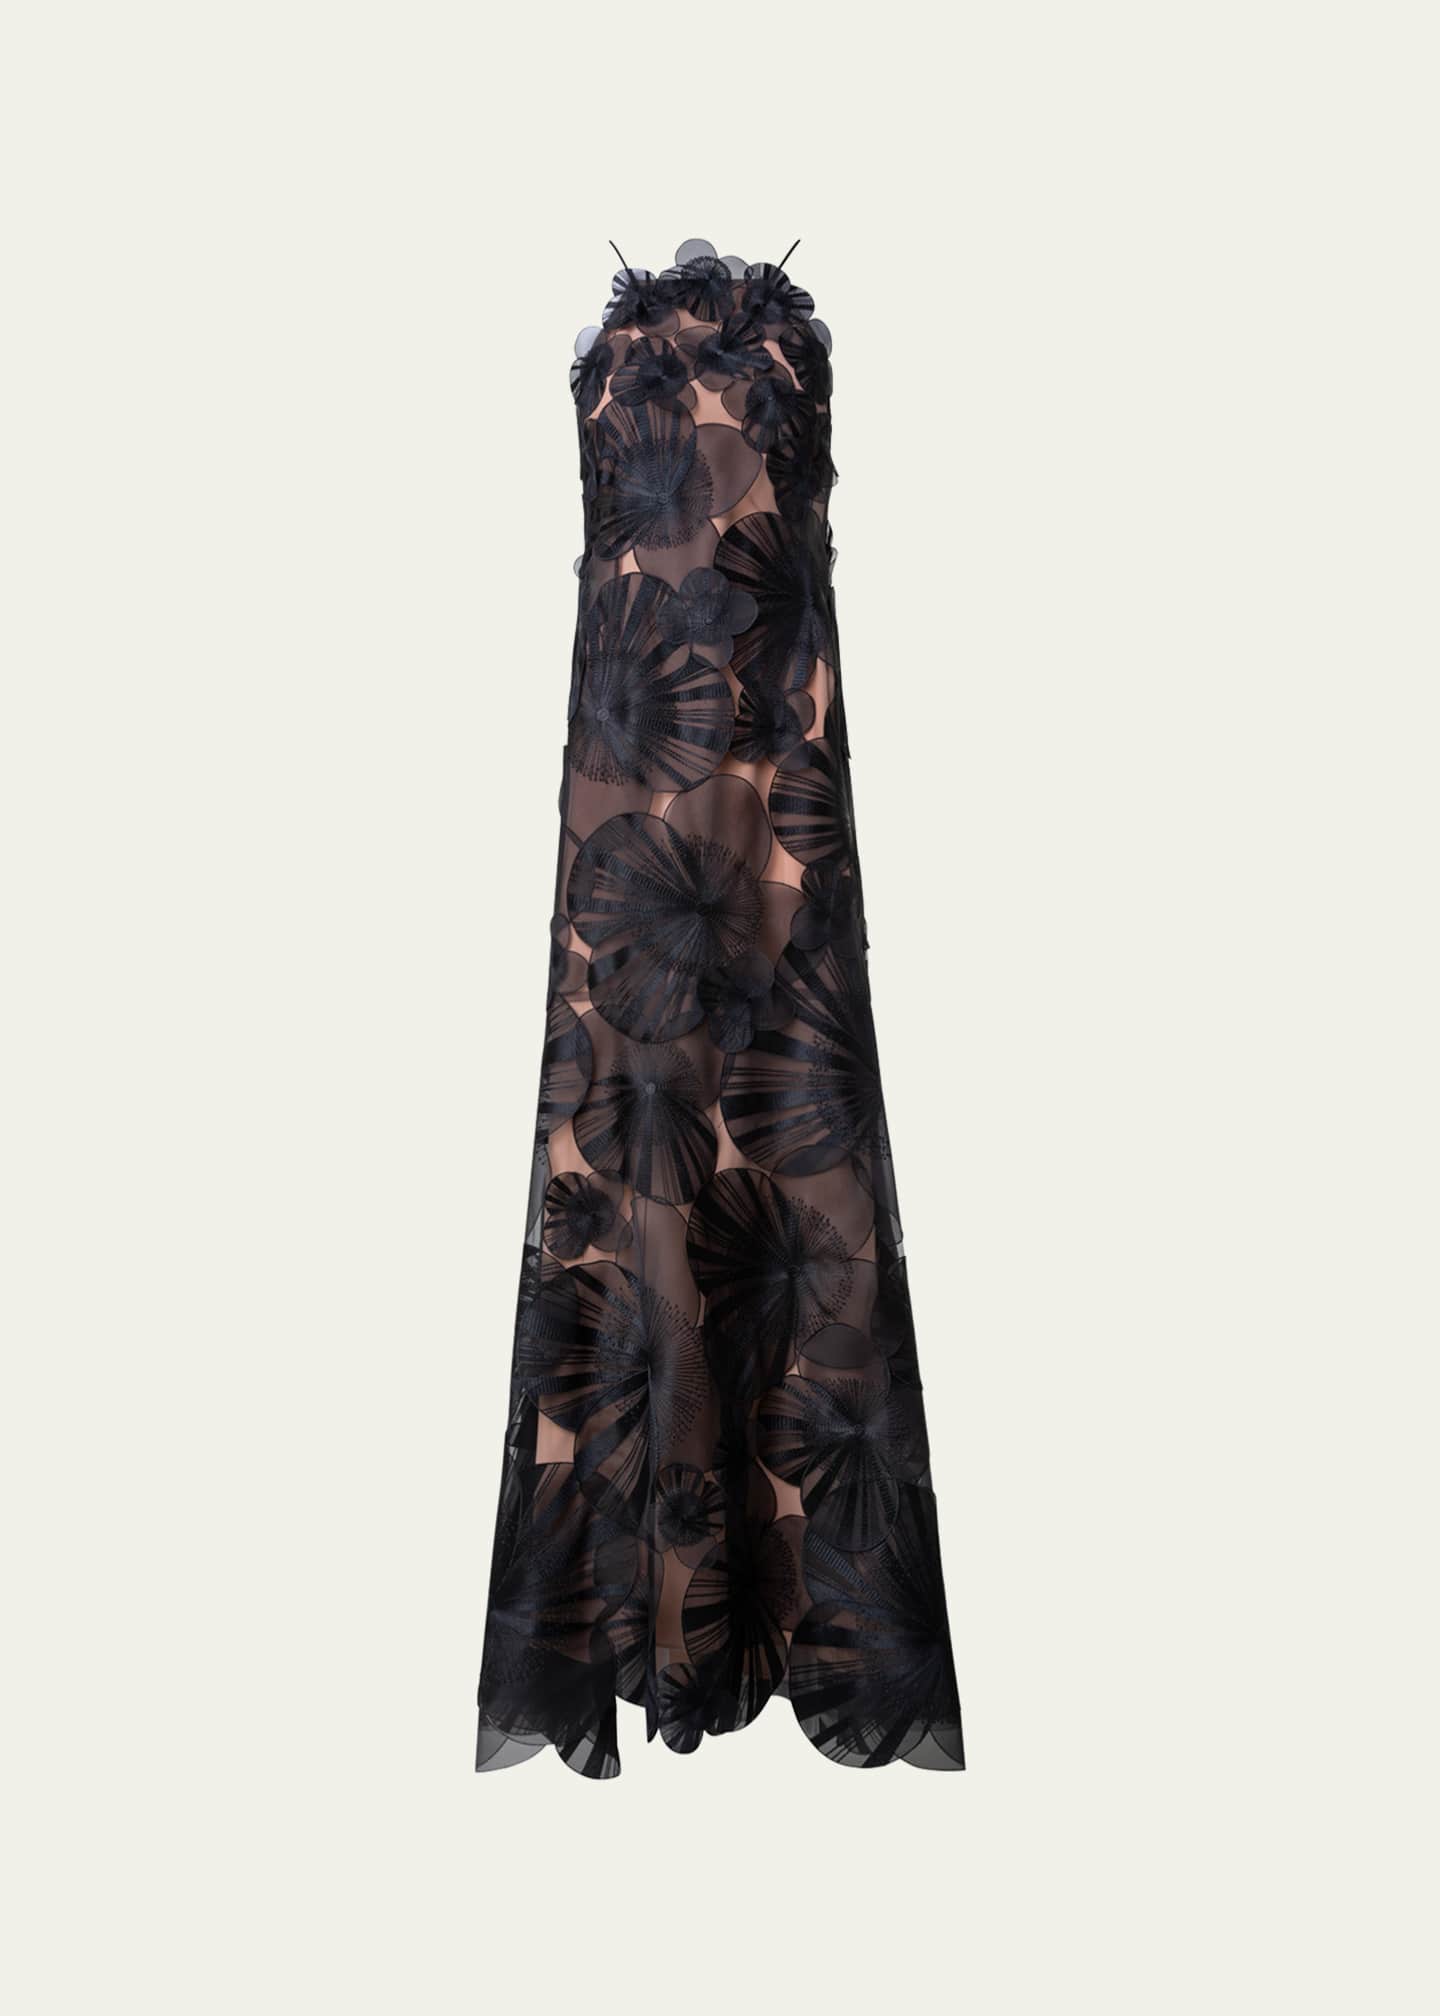 Beautiful Gown With Taffeta Silk Fabric – Kaleendi